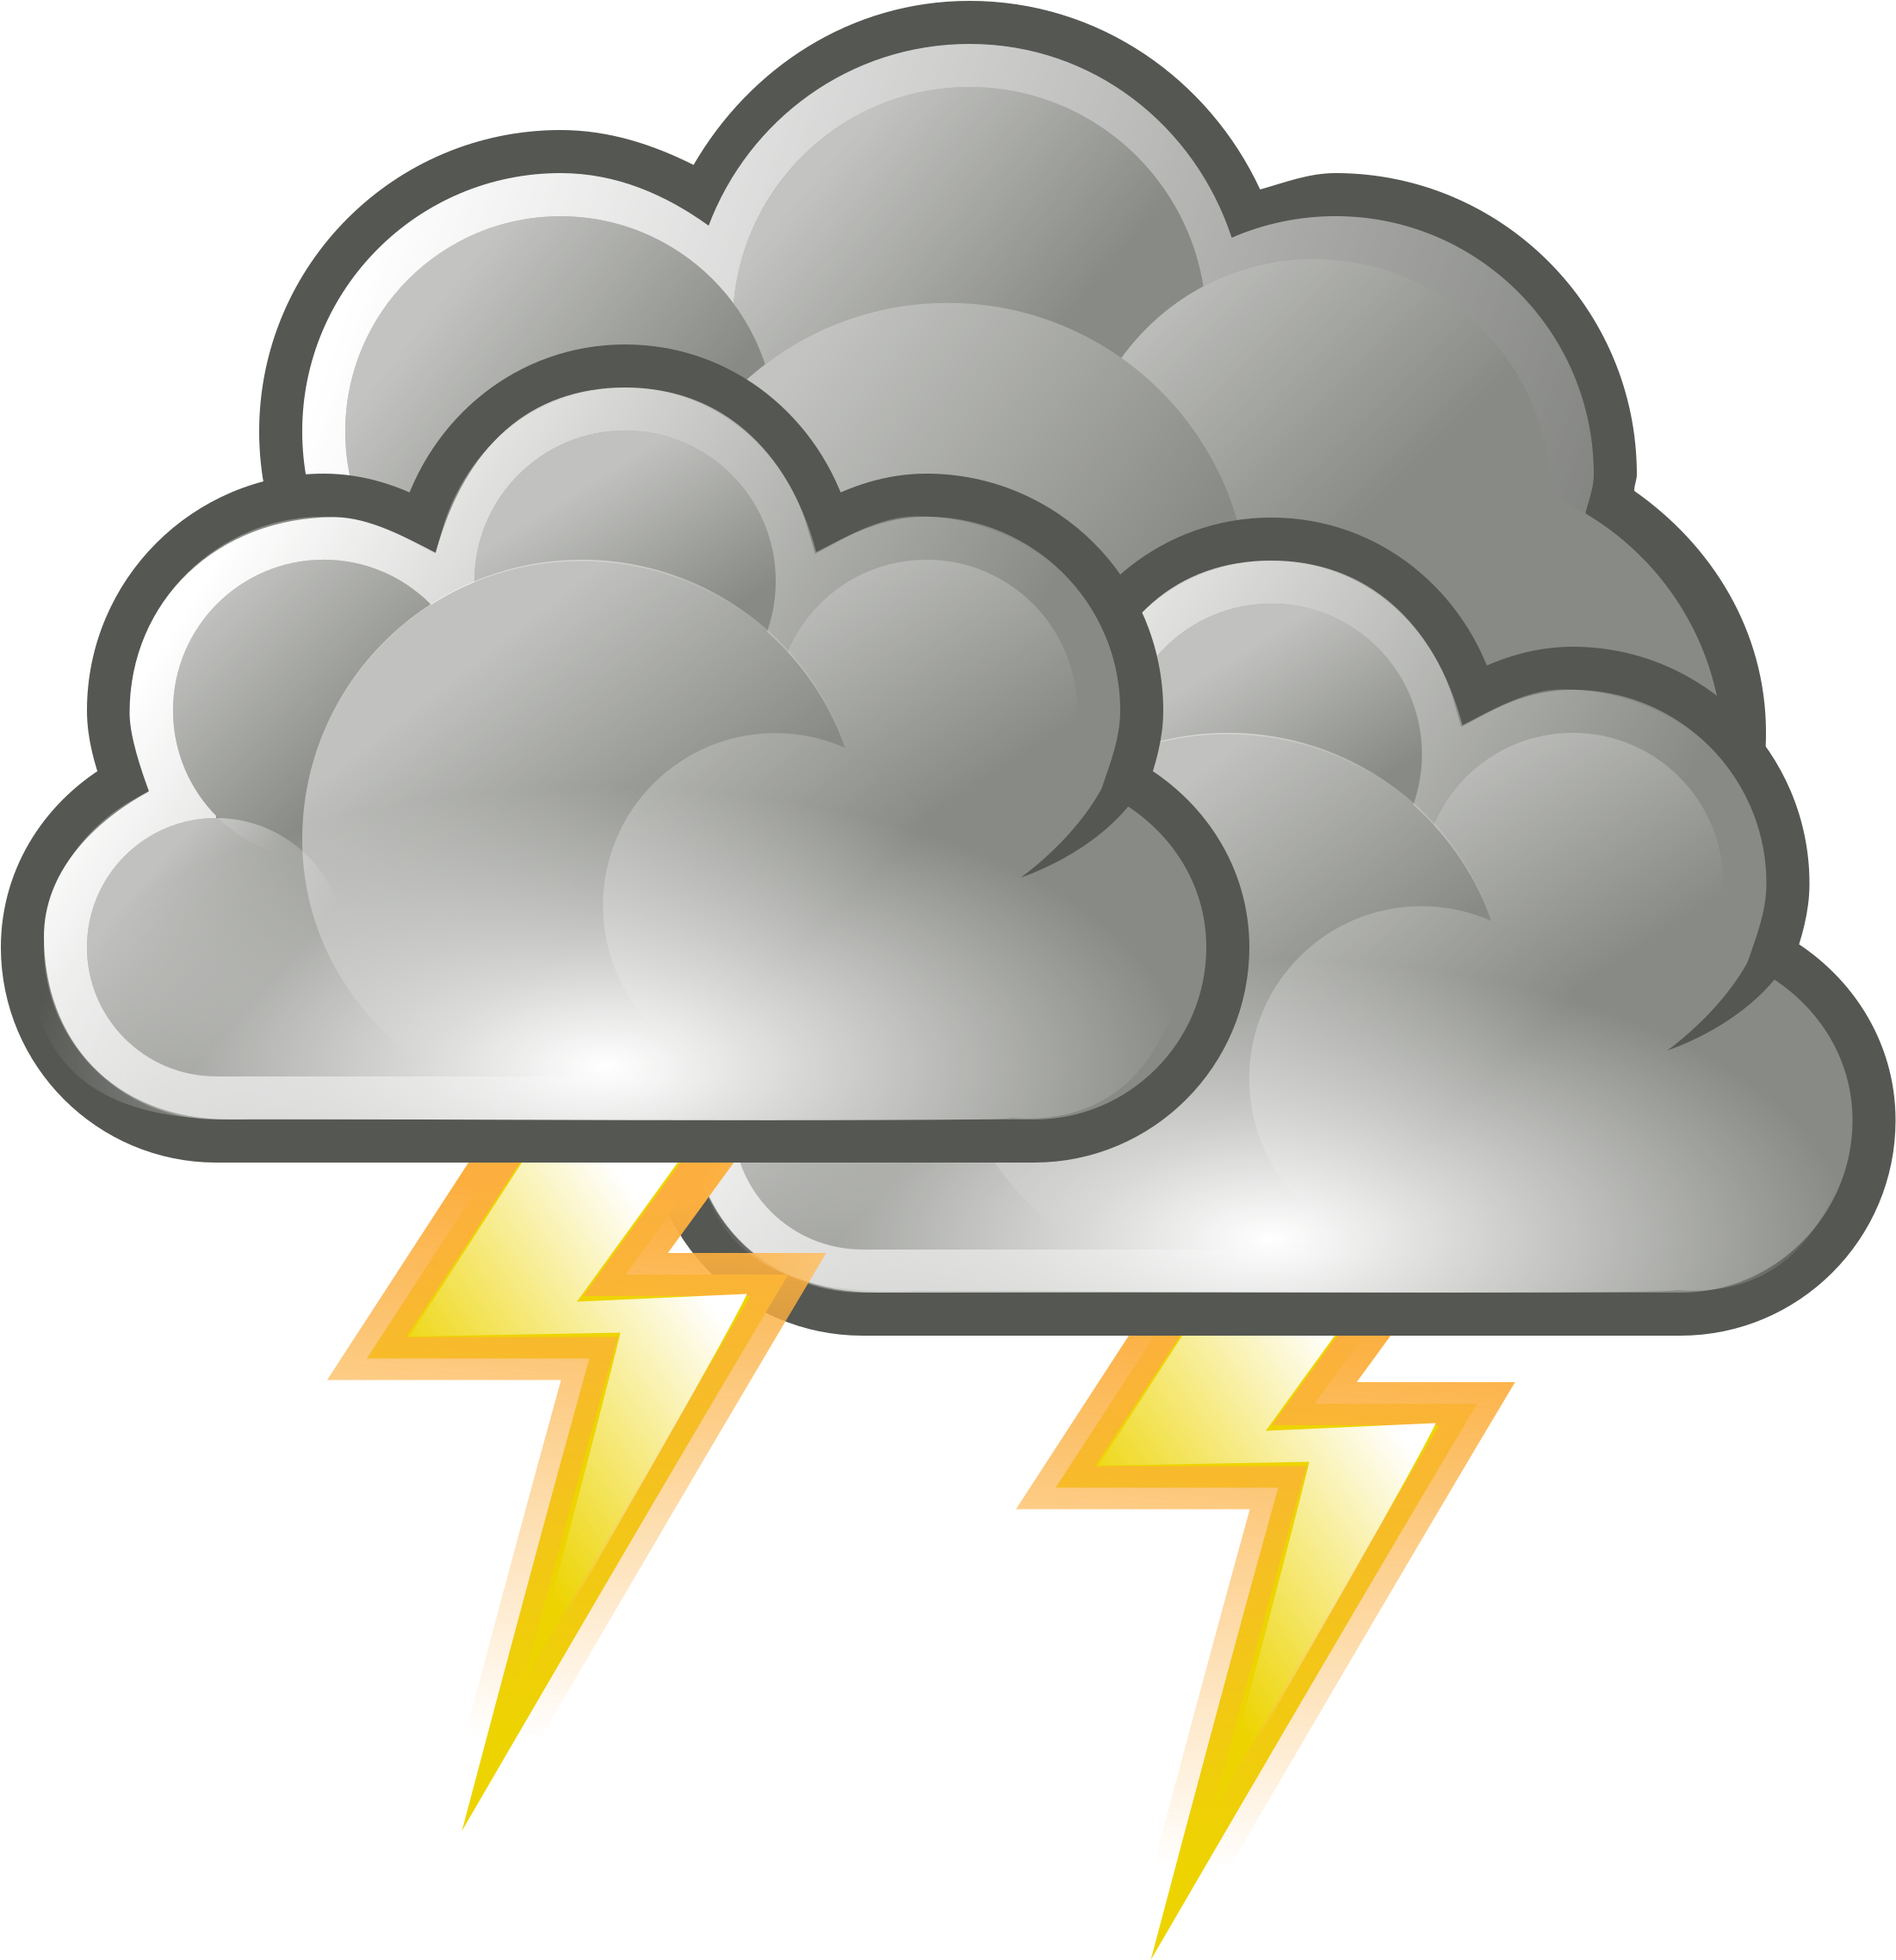 Storm Cloud Clip Art - Weather Symbols Storm.